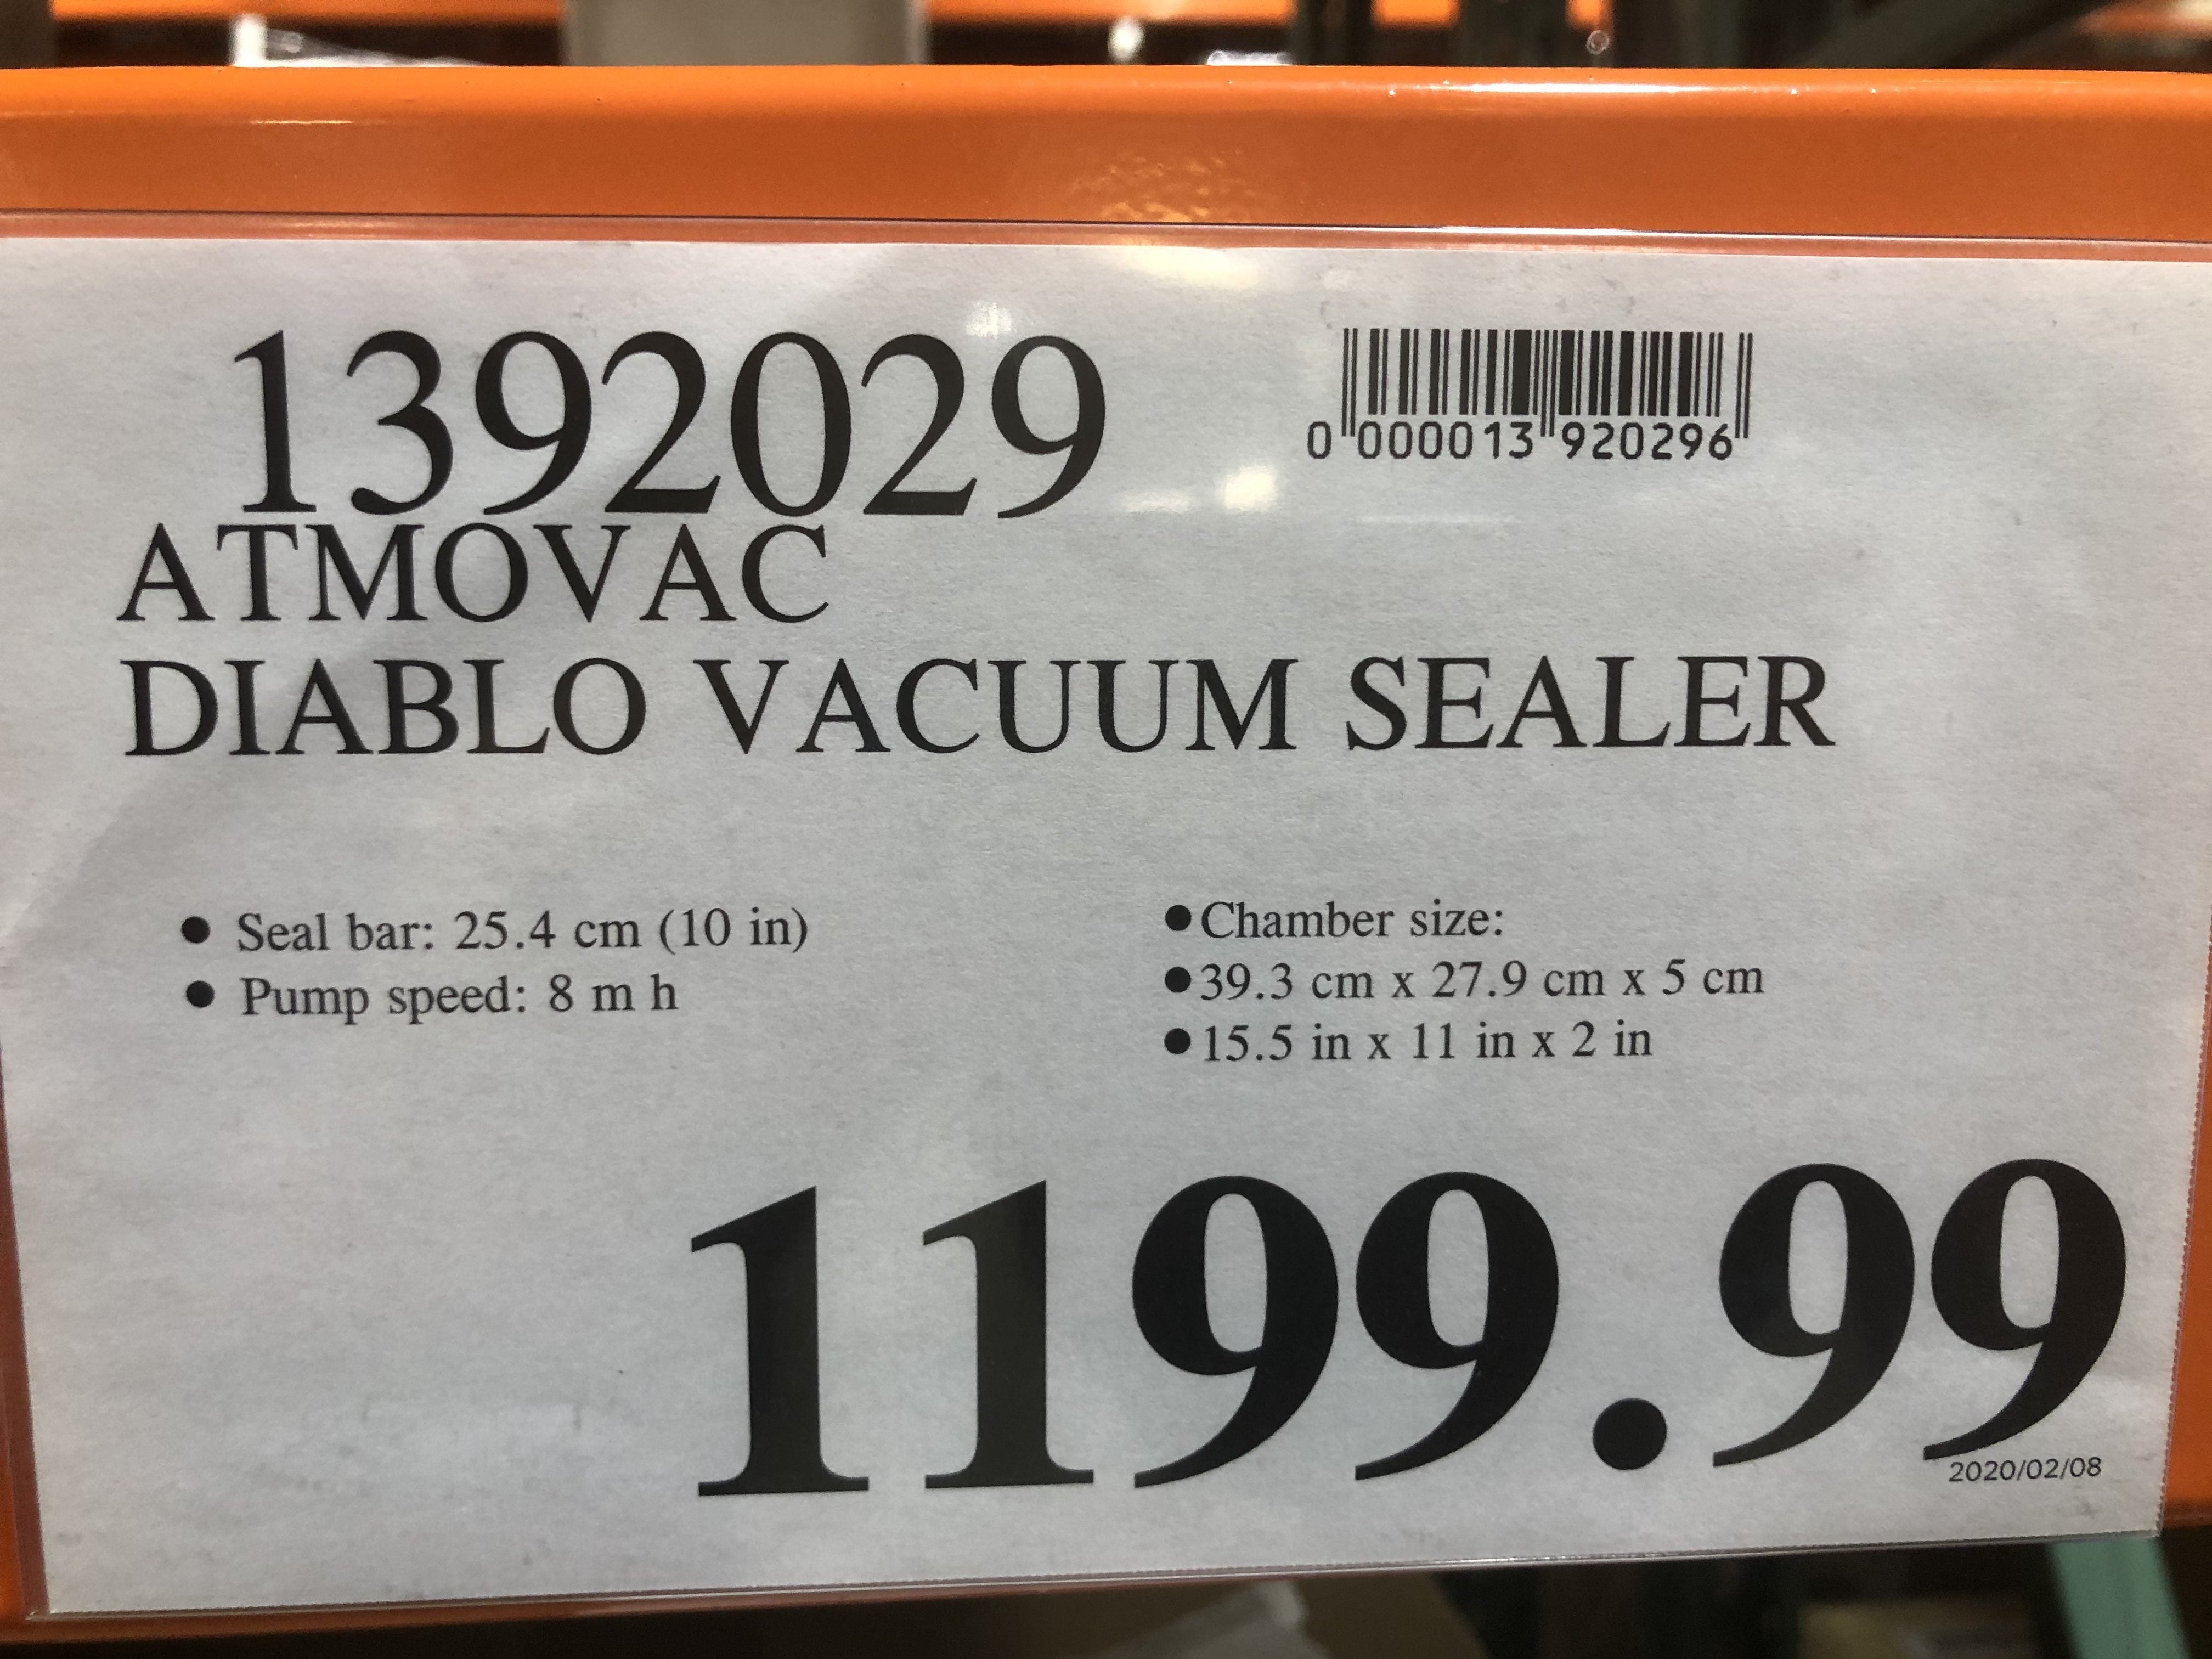 Anova] Anova Precision Vacuum Sealer Pro - 50% off - $100.50 -  RedFlagDeals.com Forums